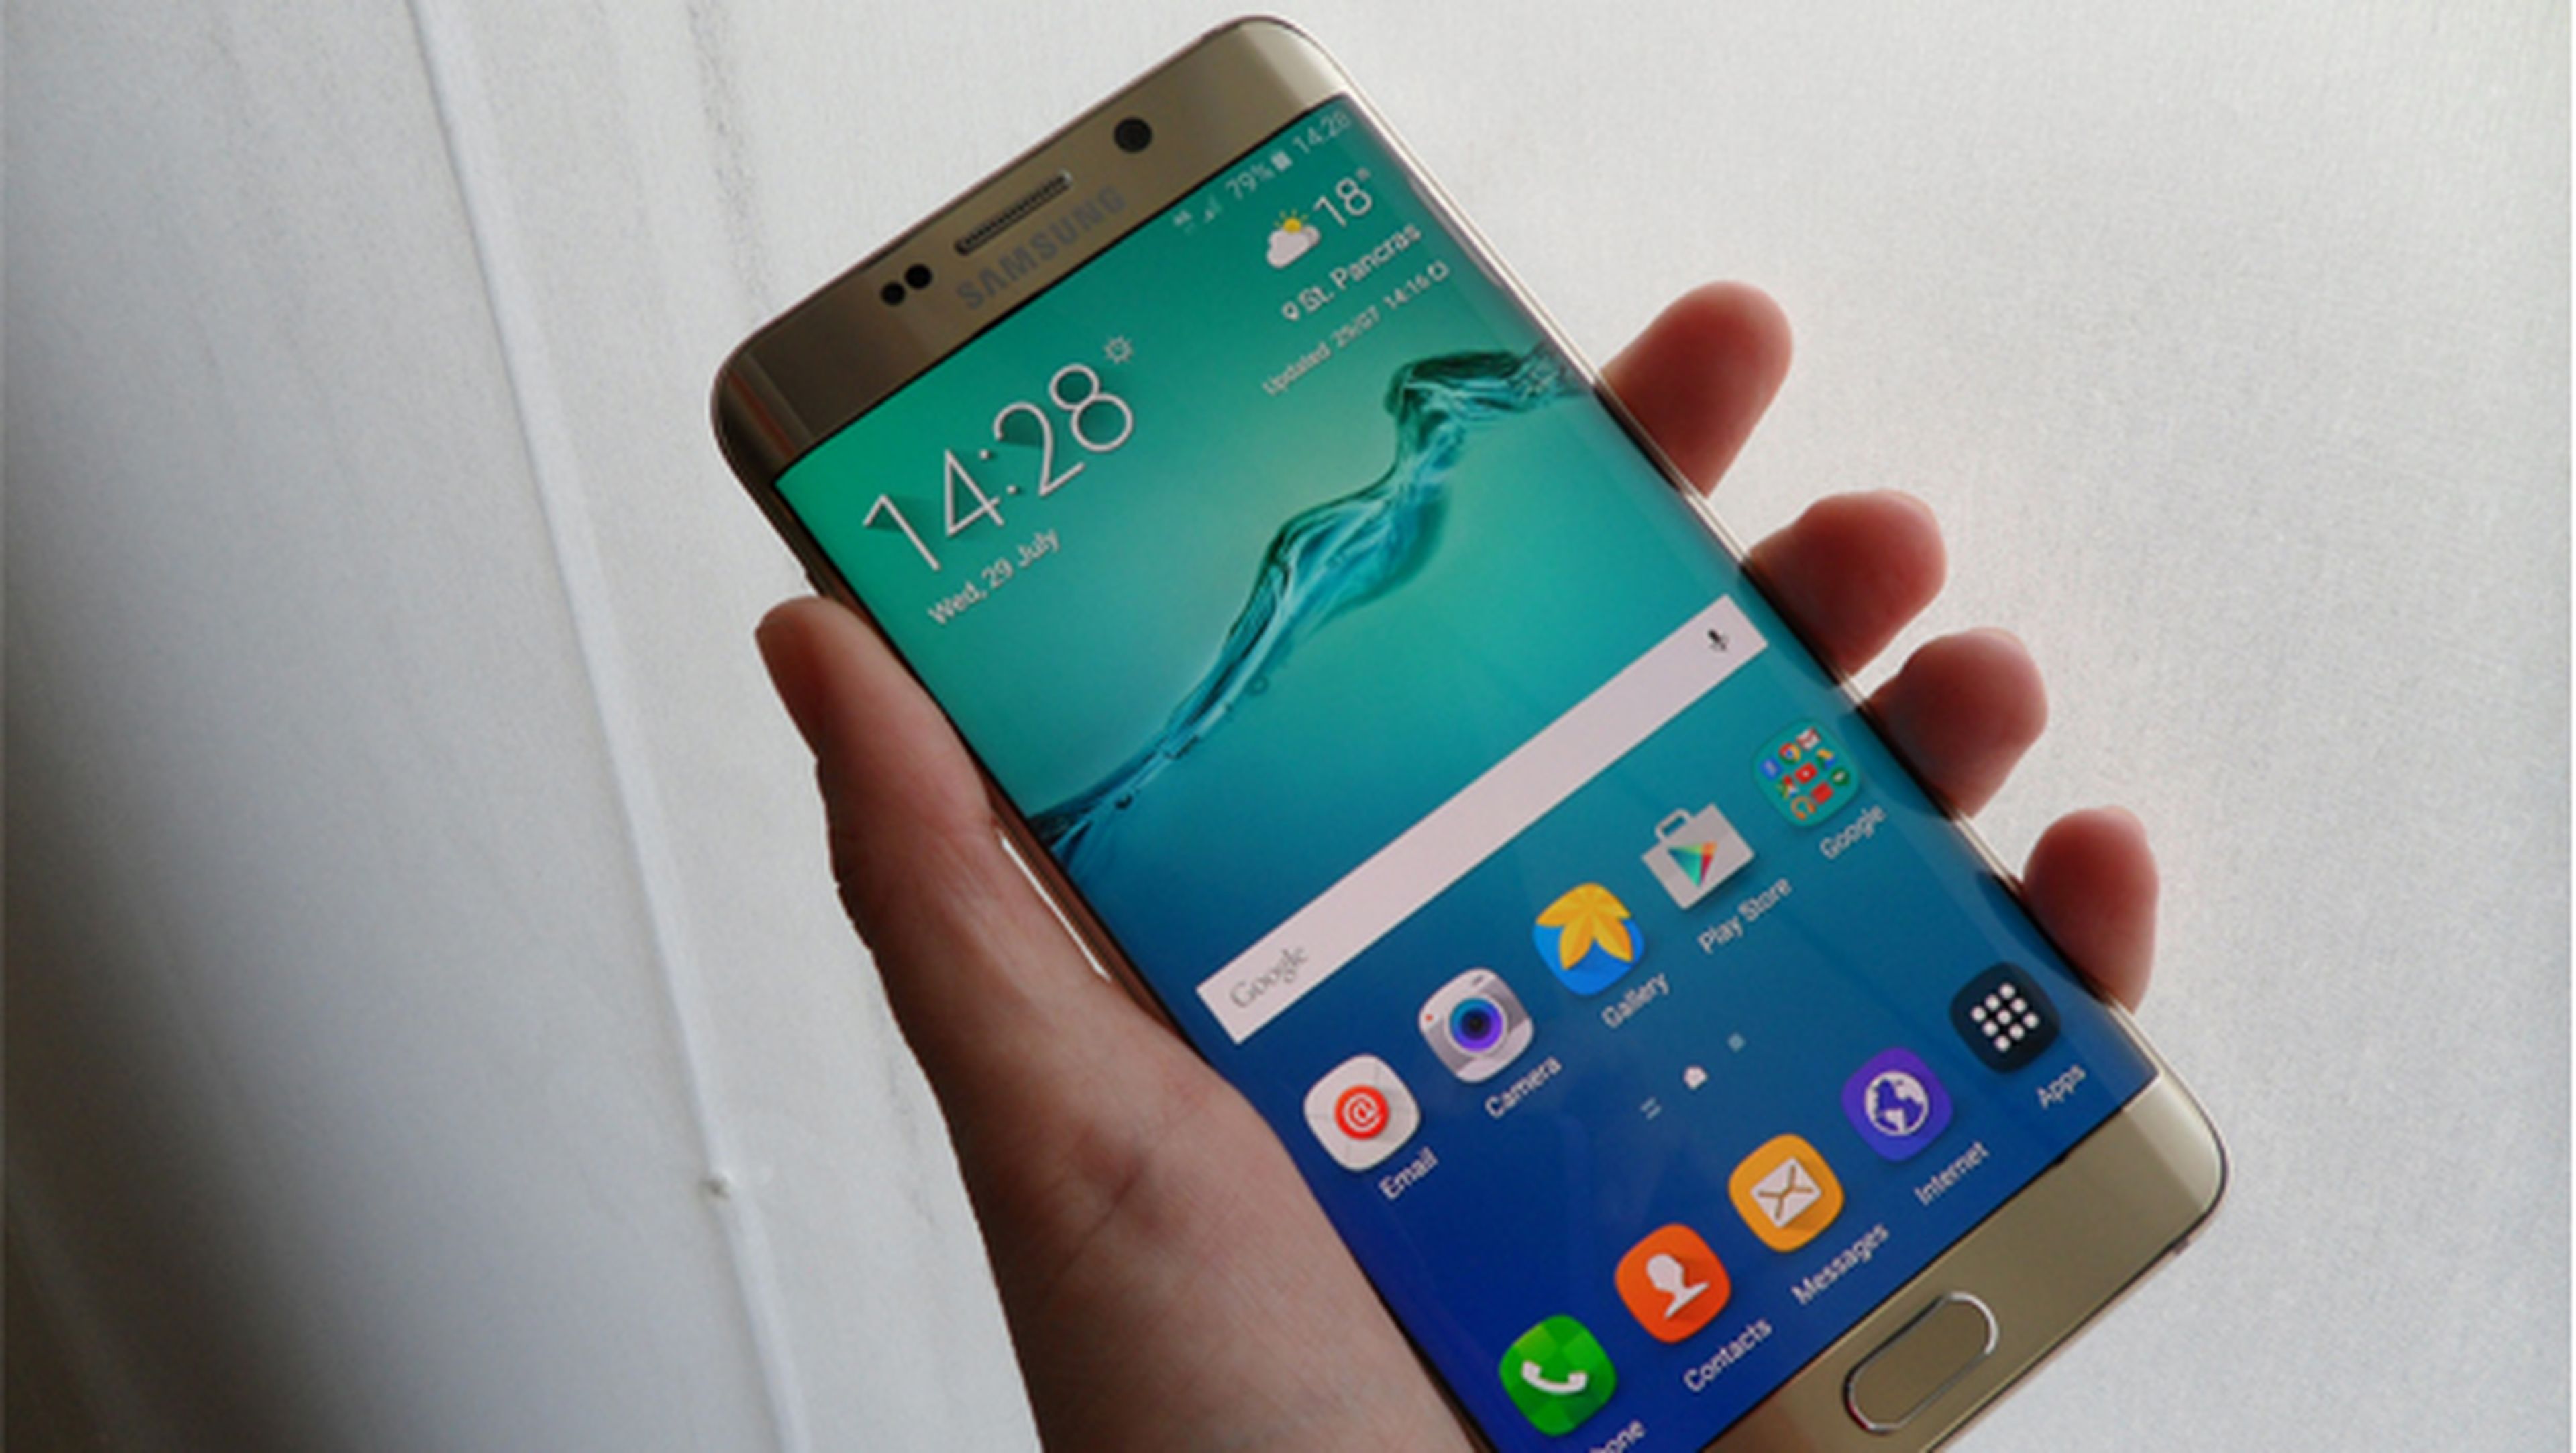 Samung Galaxy S6 Edge+, toma de contacto y primeras impresiones